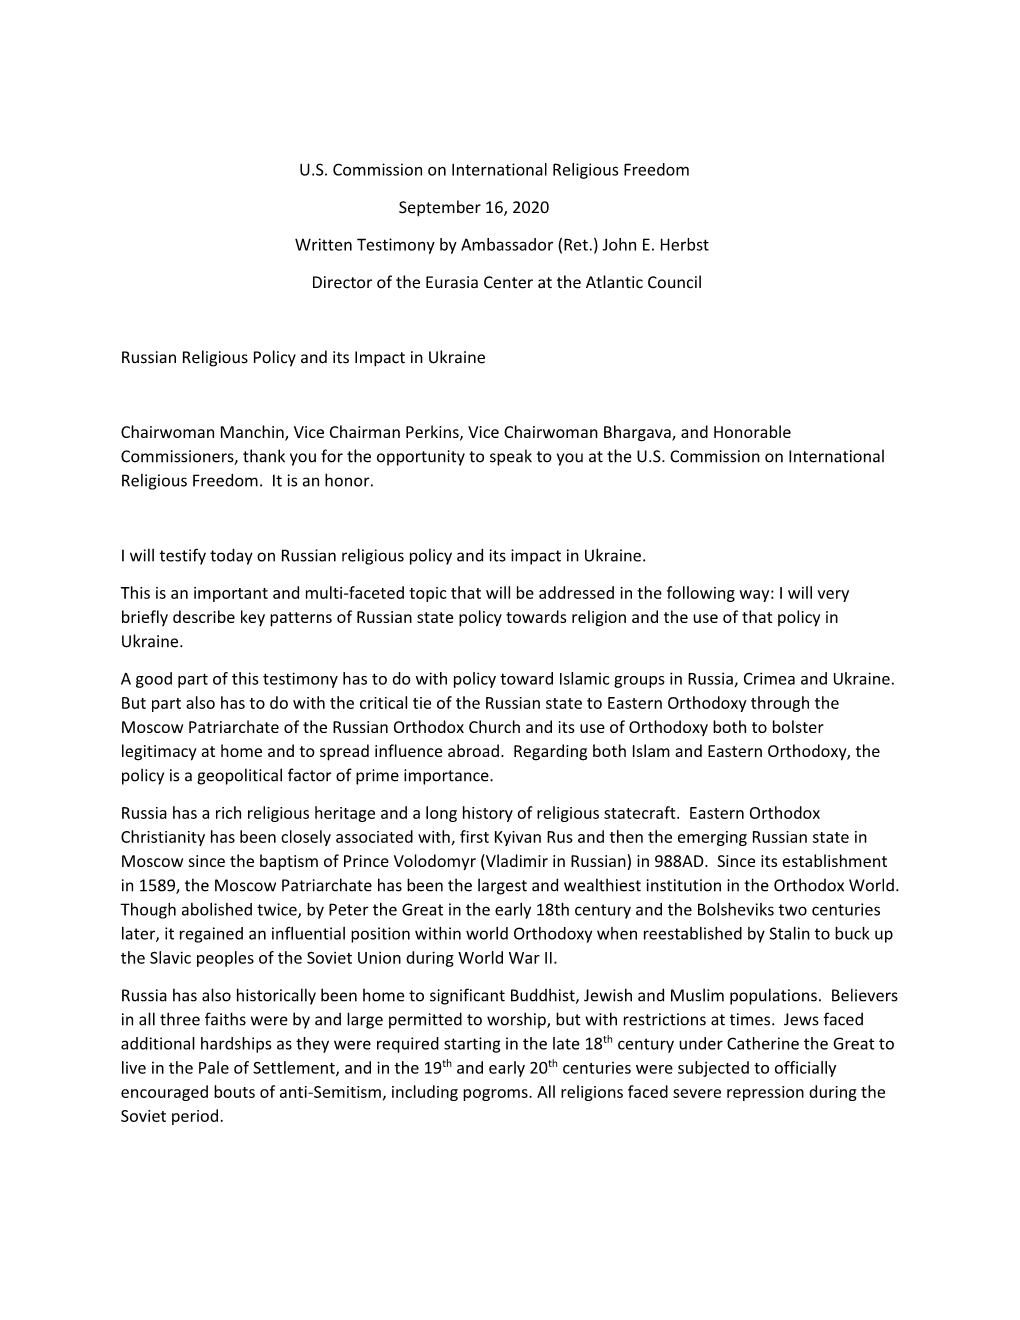 U.S. Commission on International Religious Freedom September 16, 2020 Written Testimony by Ambassador (Ret.) John E. Herbst